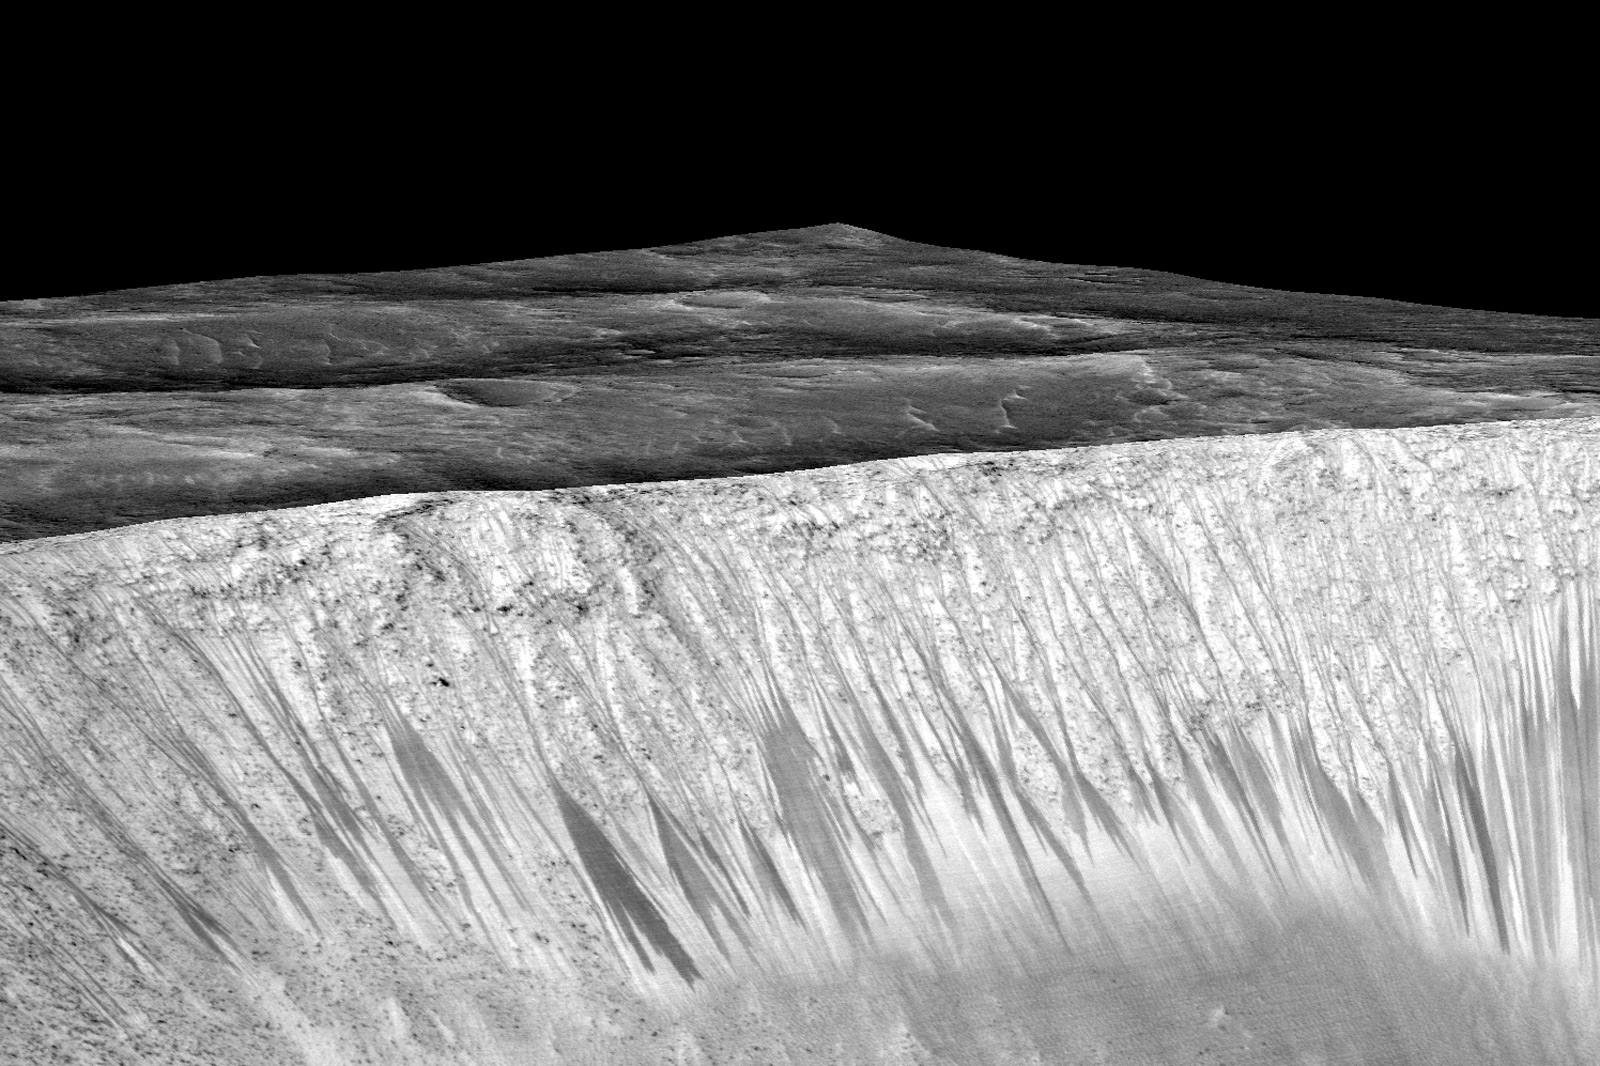 ماموریت مهم کاوشگر ناسا برای کشف آب در منطقه ای در مریخ / یکسال تا مشخص شدن وجود آب در مریخ